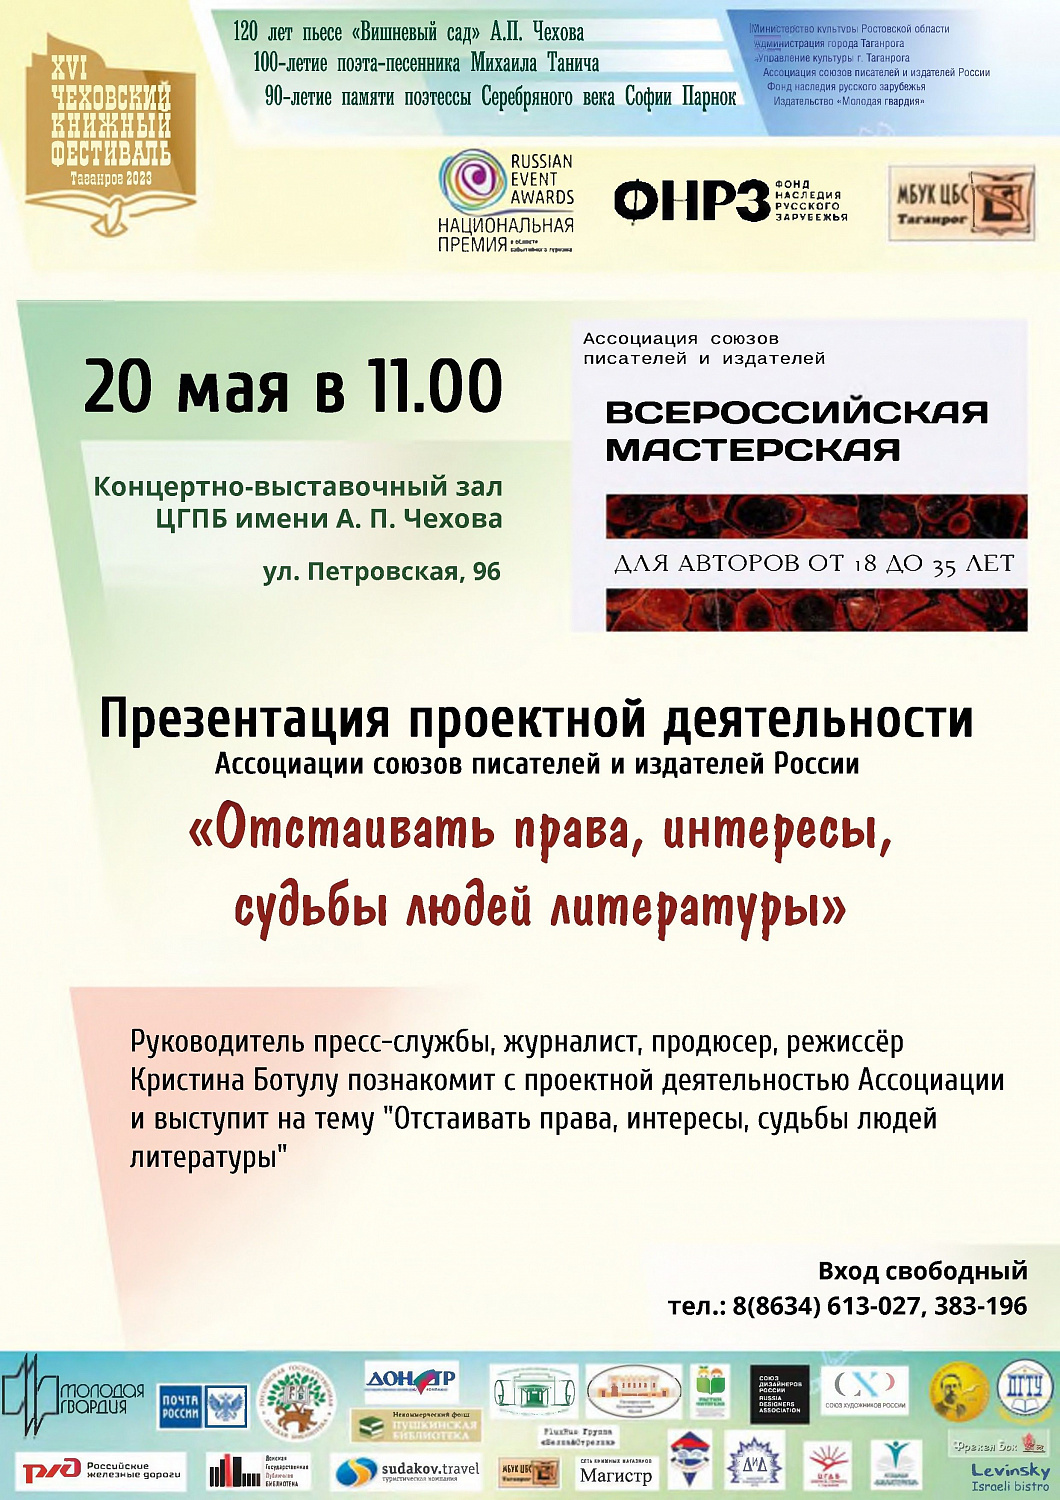 Шестнадцатый Чеховский книжный фестиваль